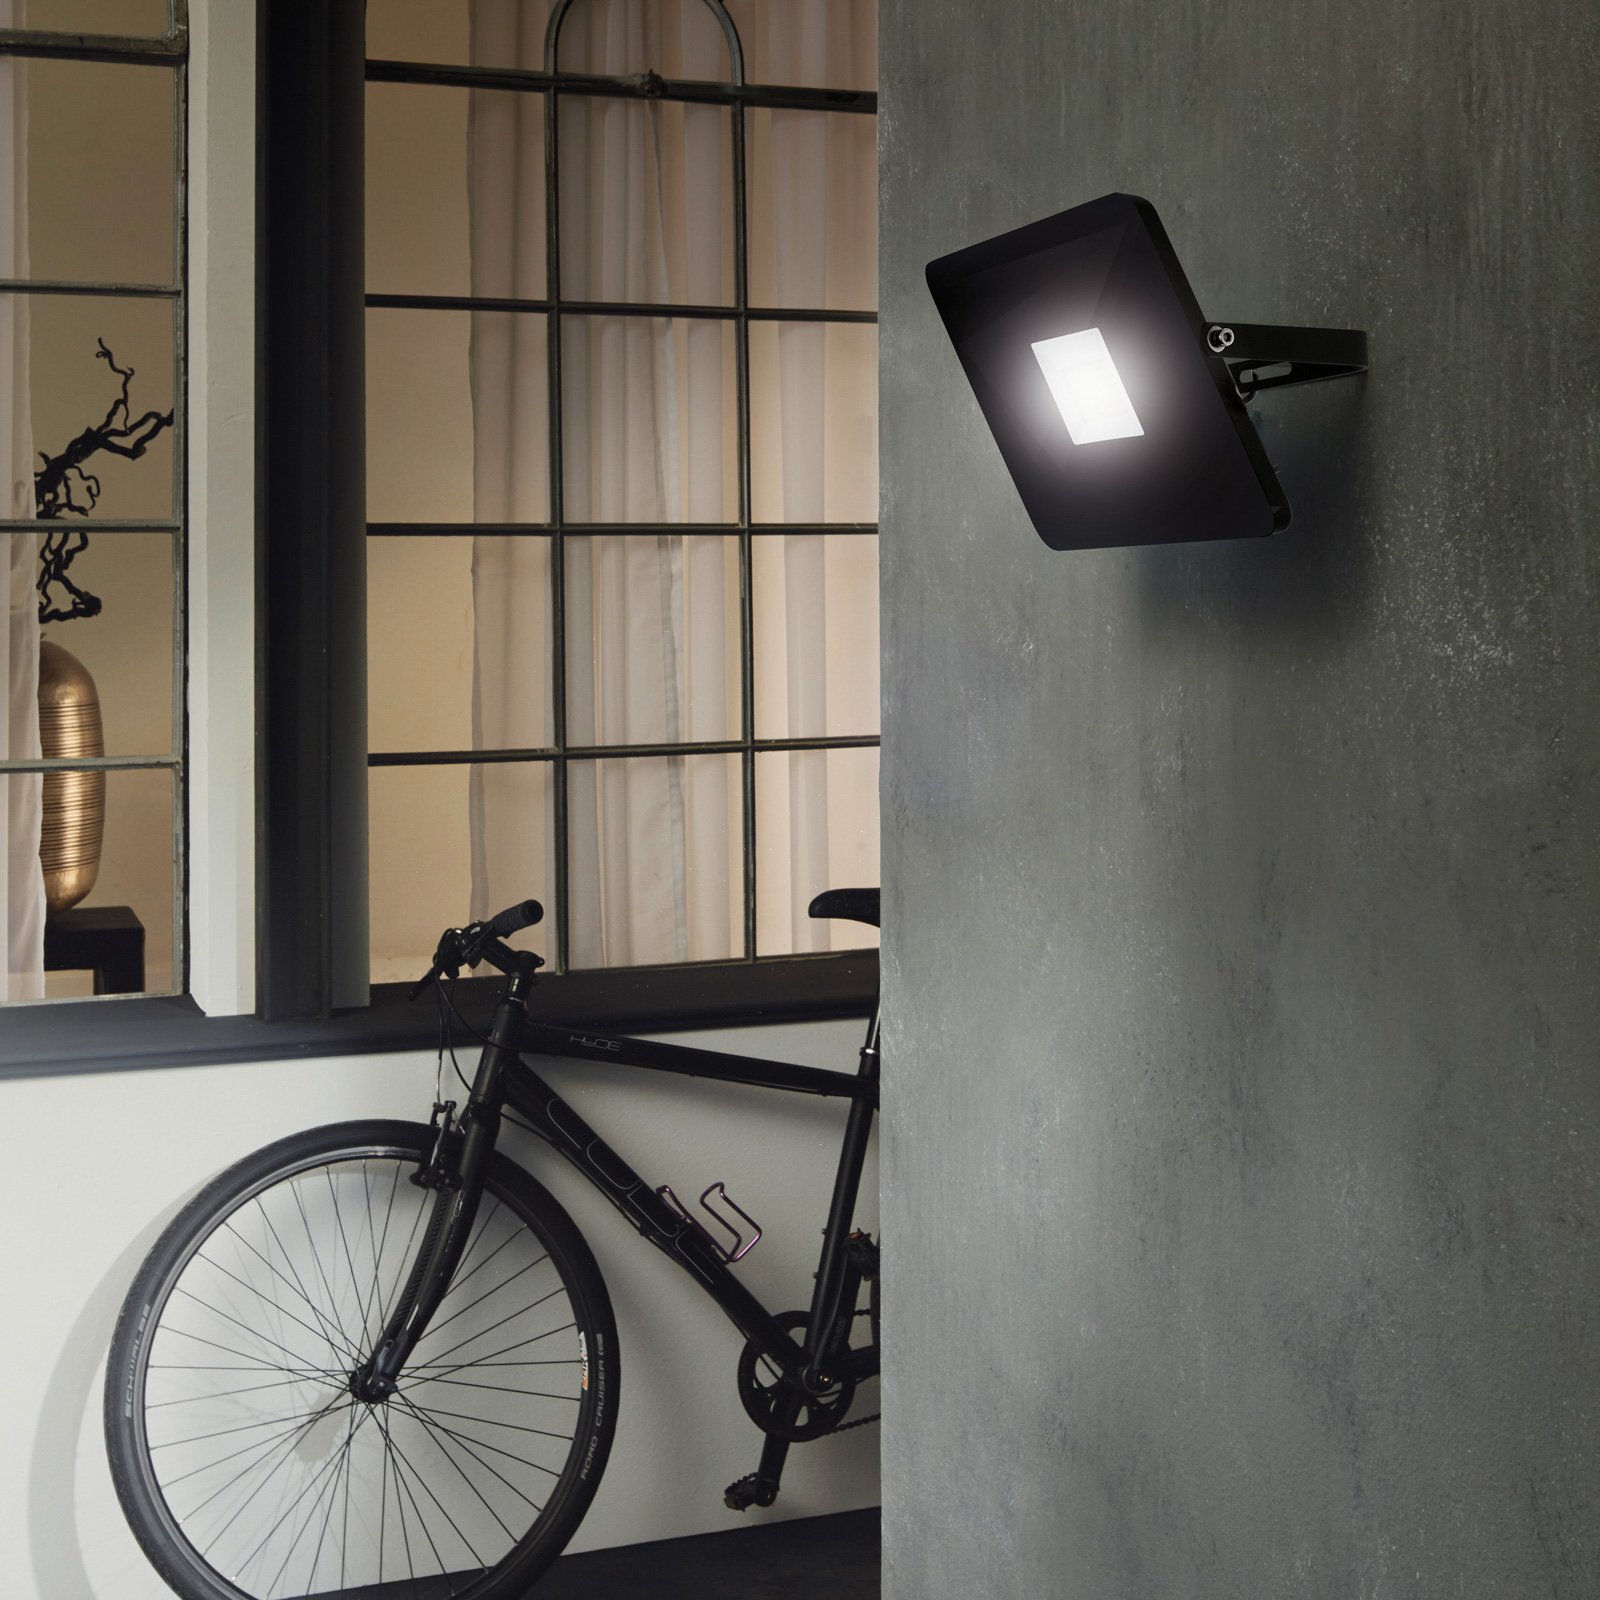 Faedo 3 LED venkovní reflektor v černé barvě, 50W